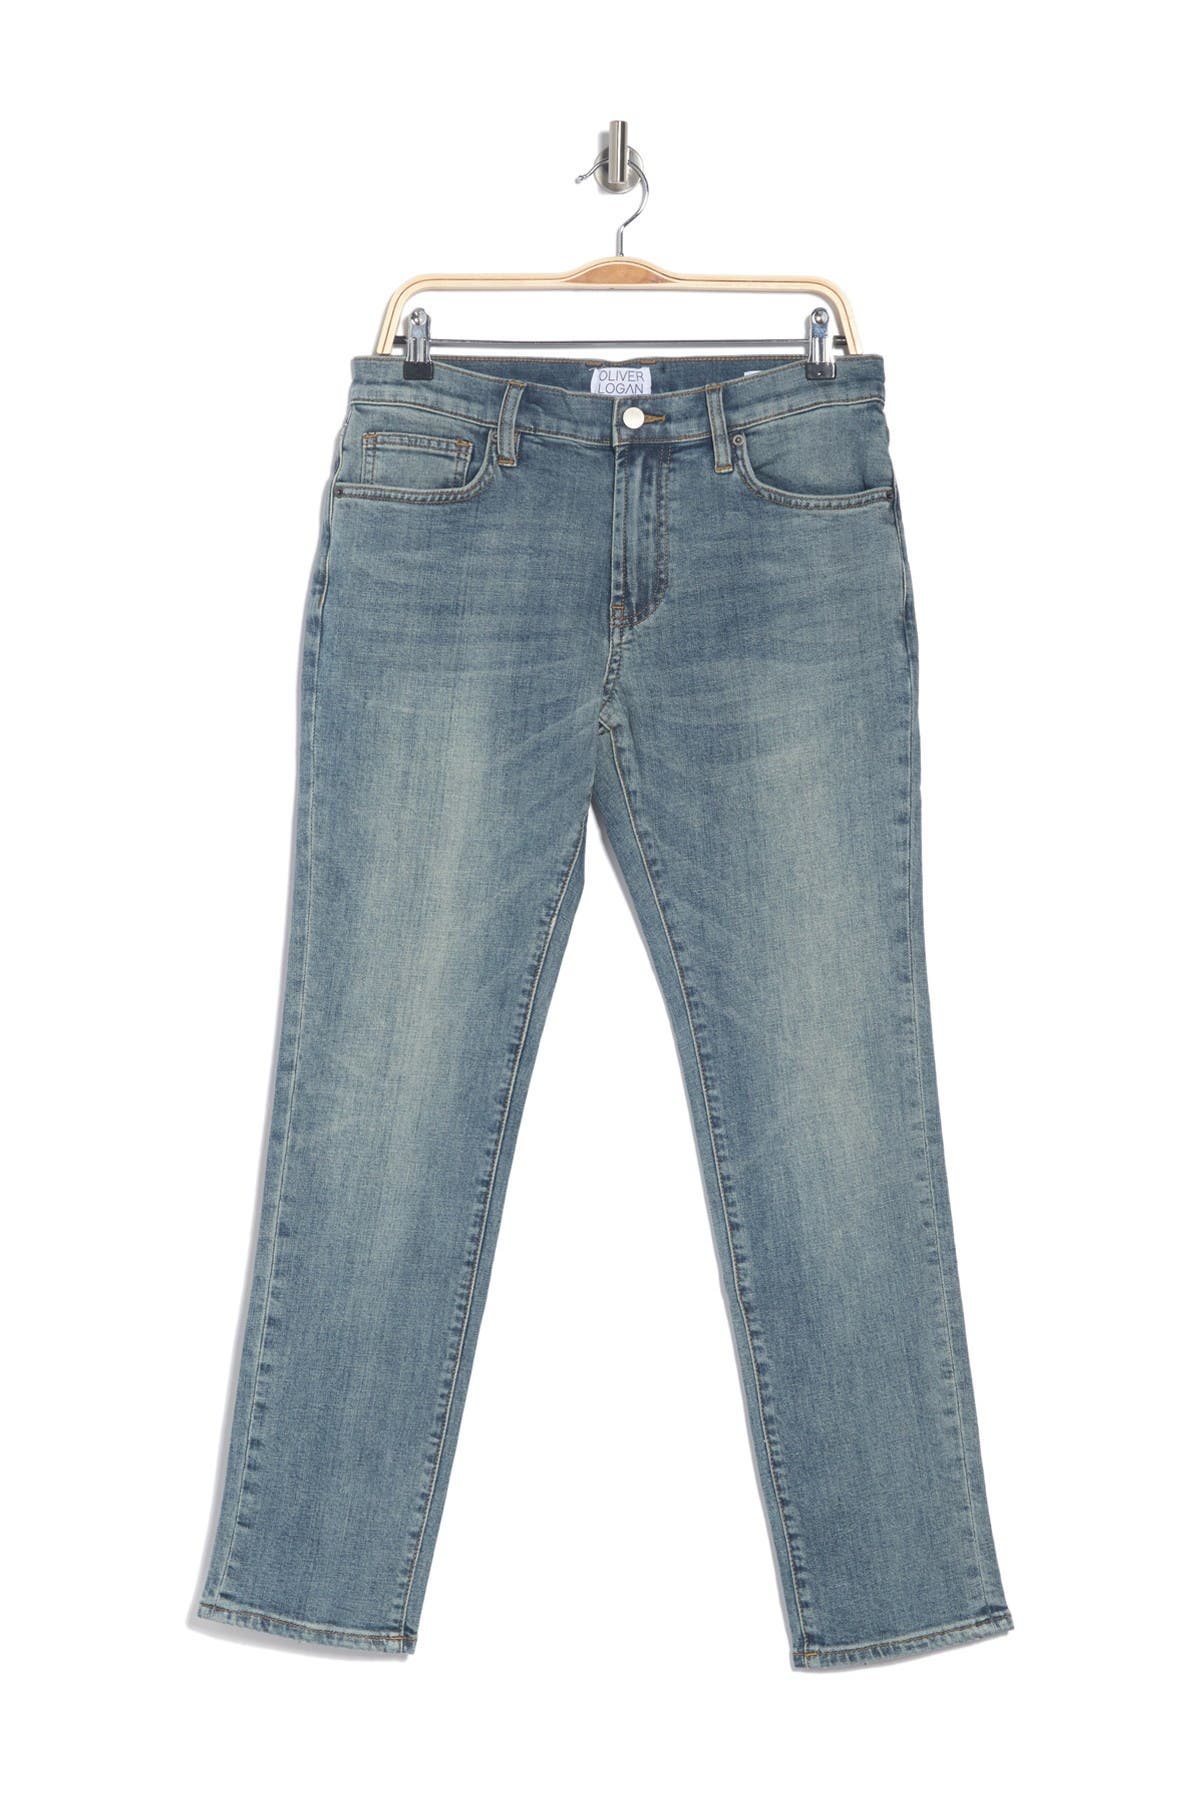 oliver logan jeans